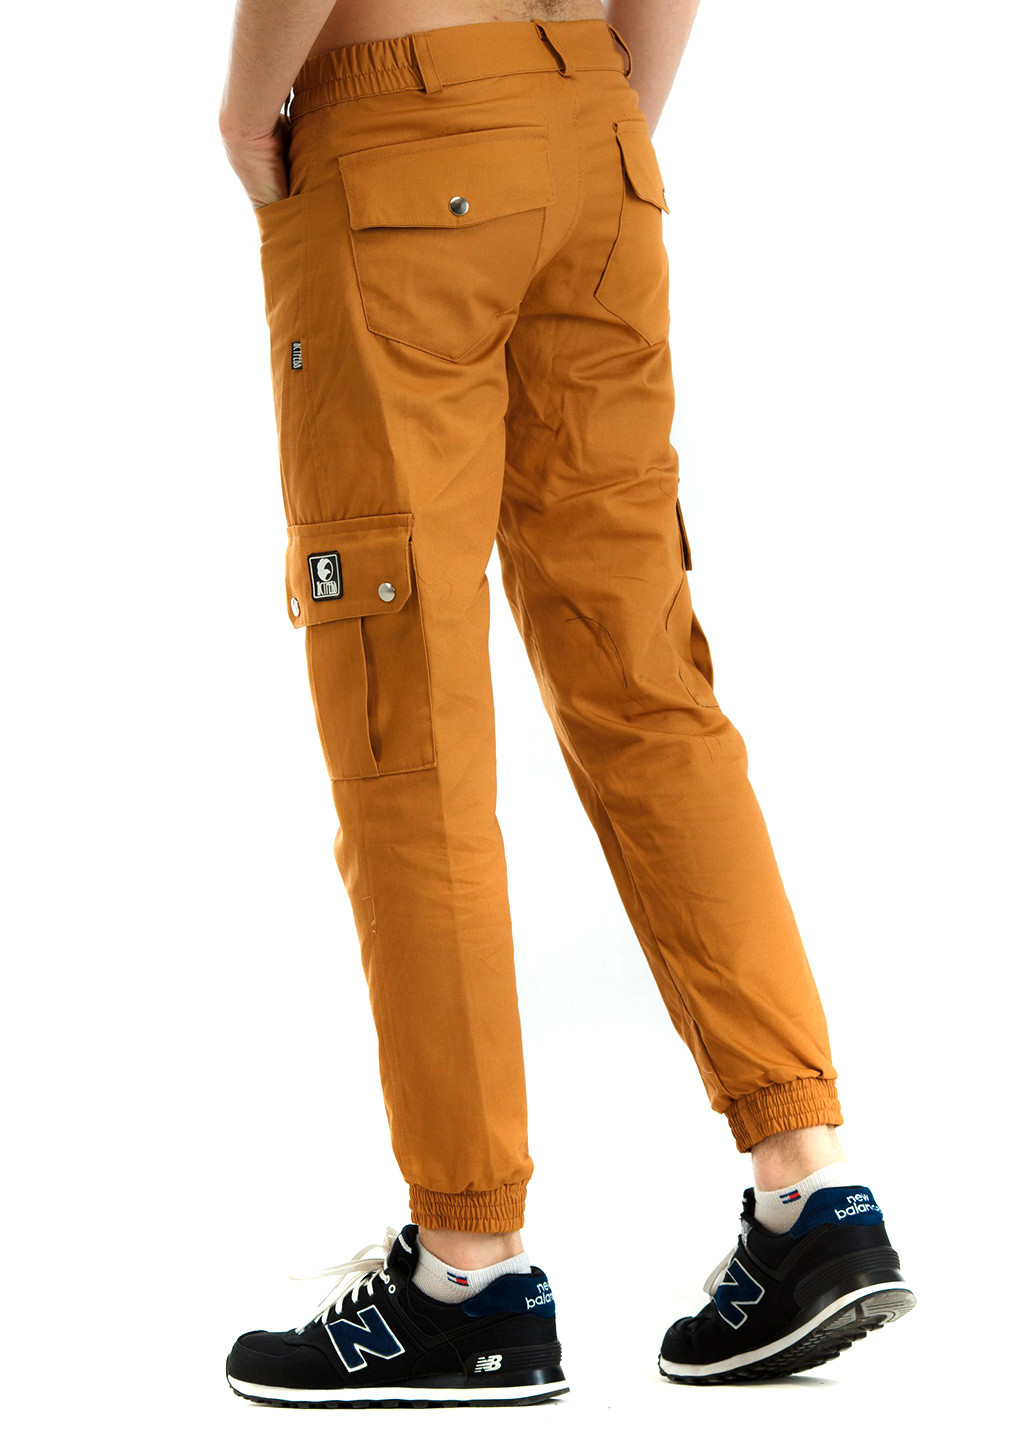 Светло-коричневые кэжуал демисезонные со средней талией брюки Ястребь